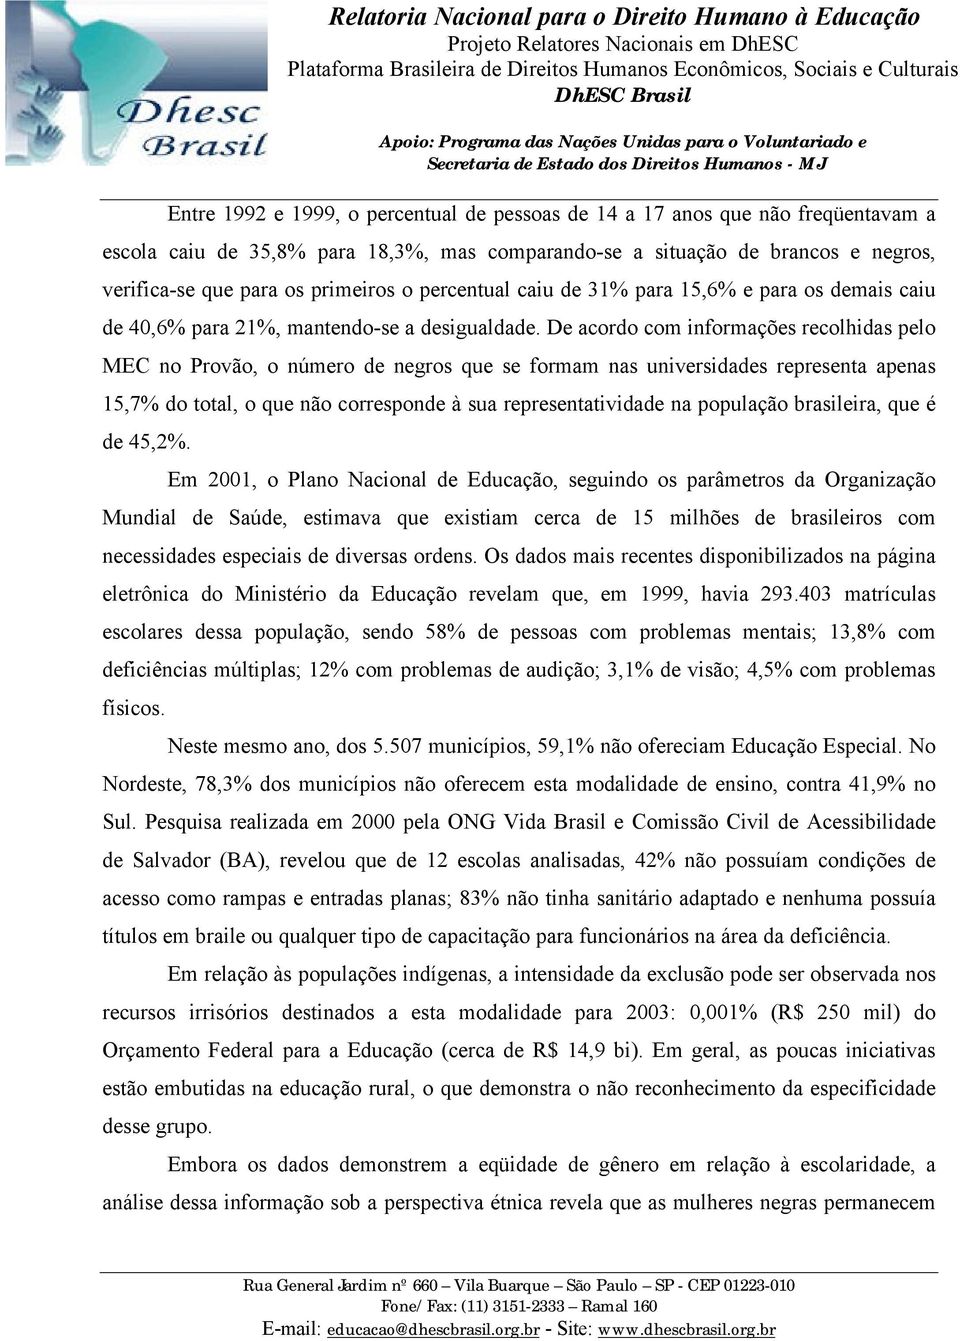 De acordo com informações recolhidas pelo MEC no Provão, o número de negros que se formam nas universidades representa apenas 15,7% do total, o que não corresponde à sua representatividade na